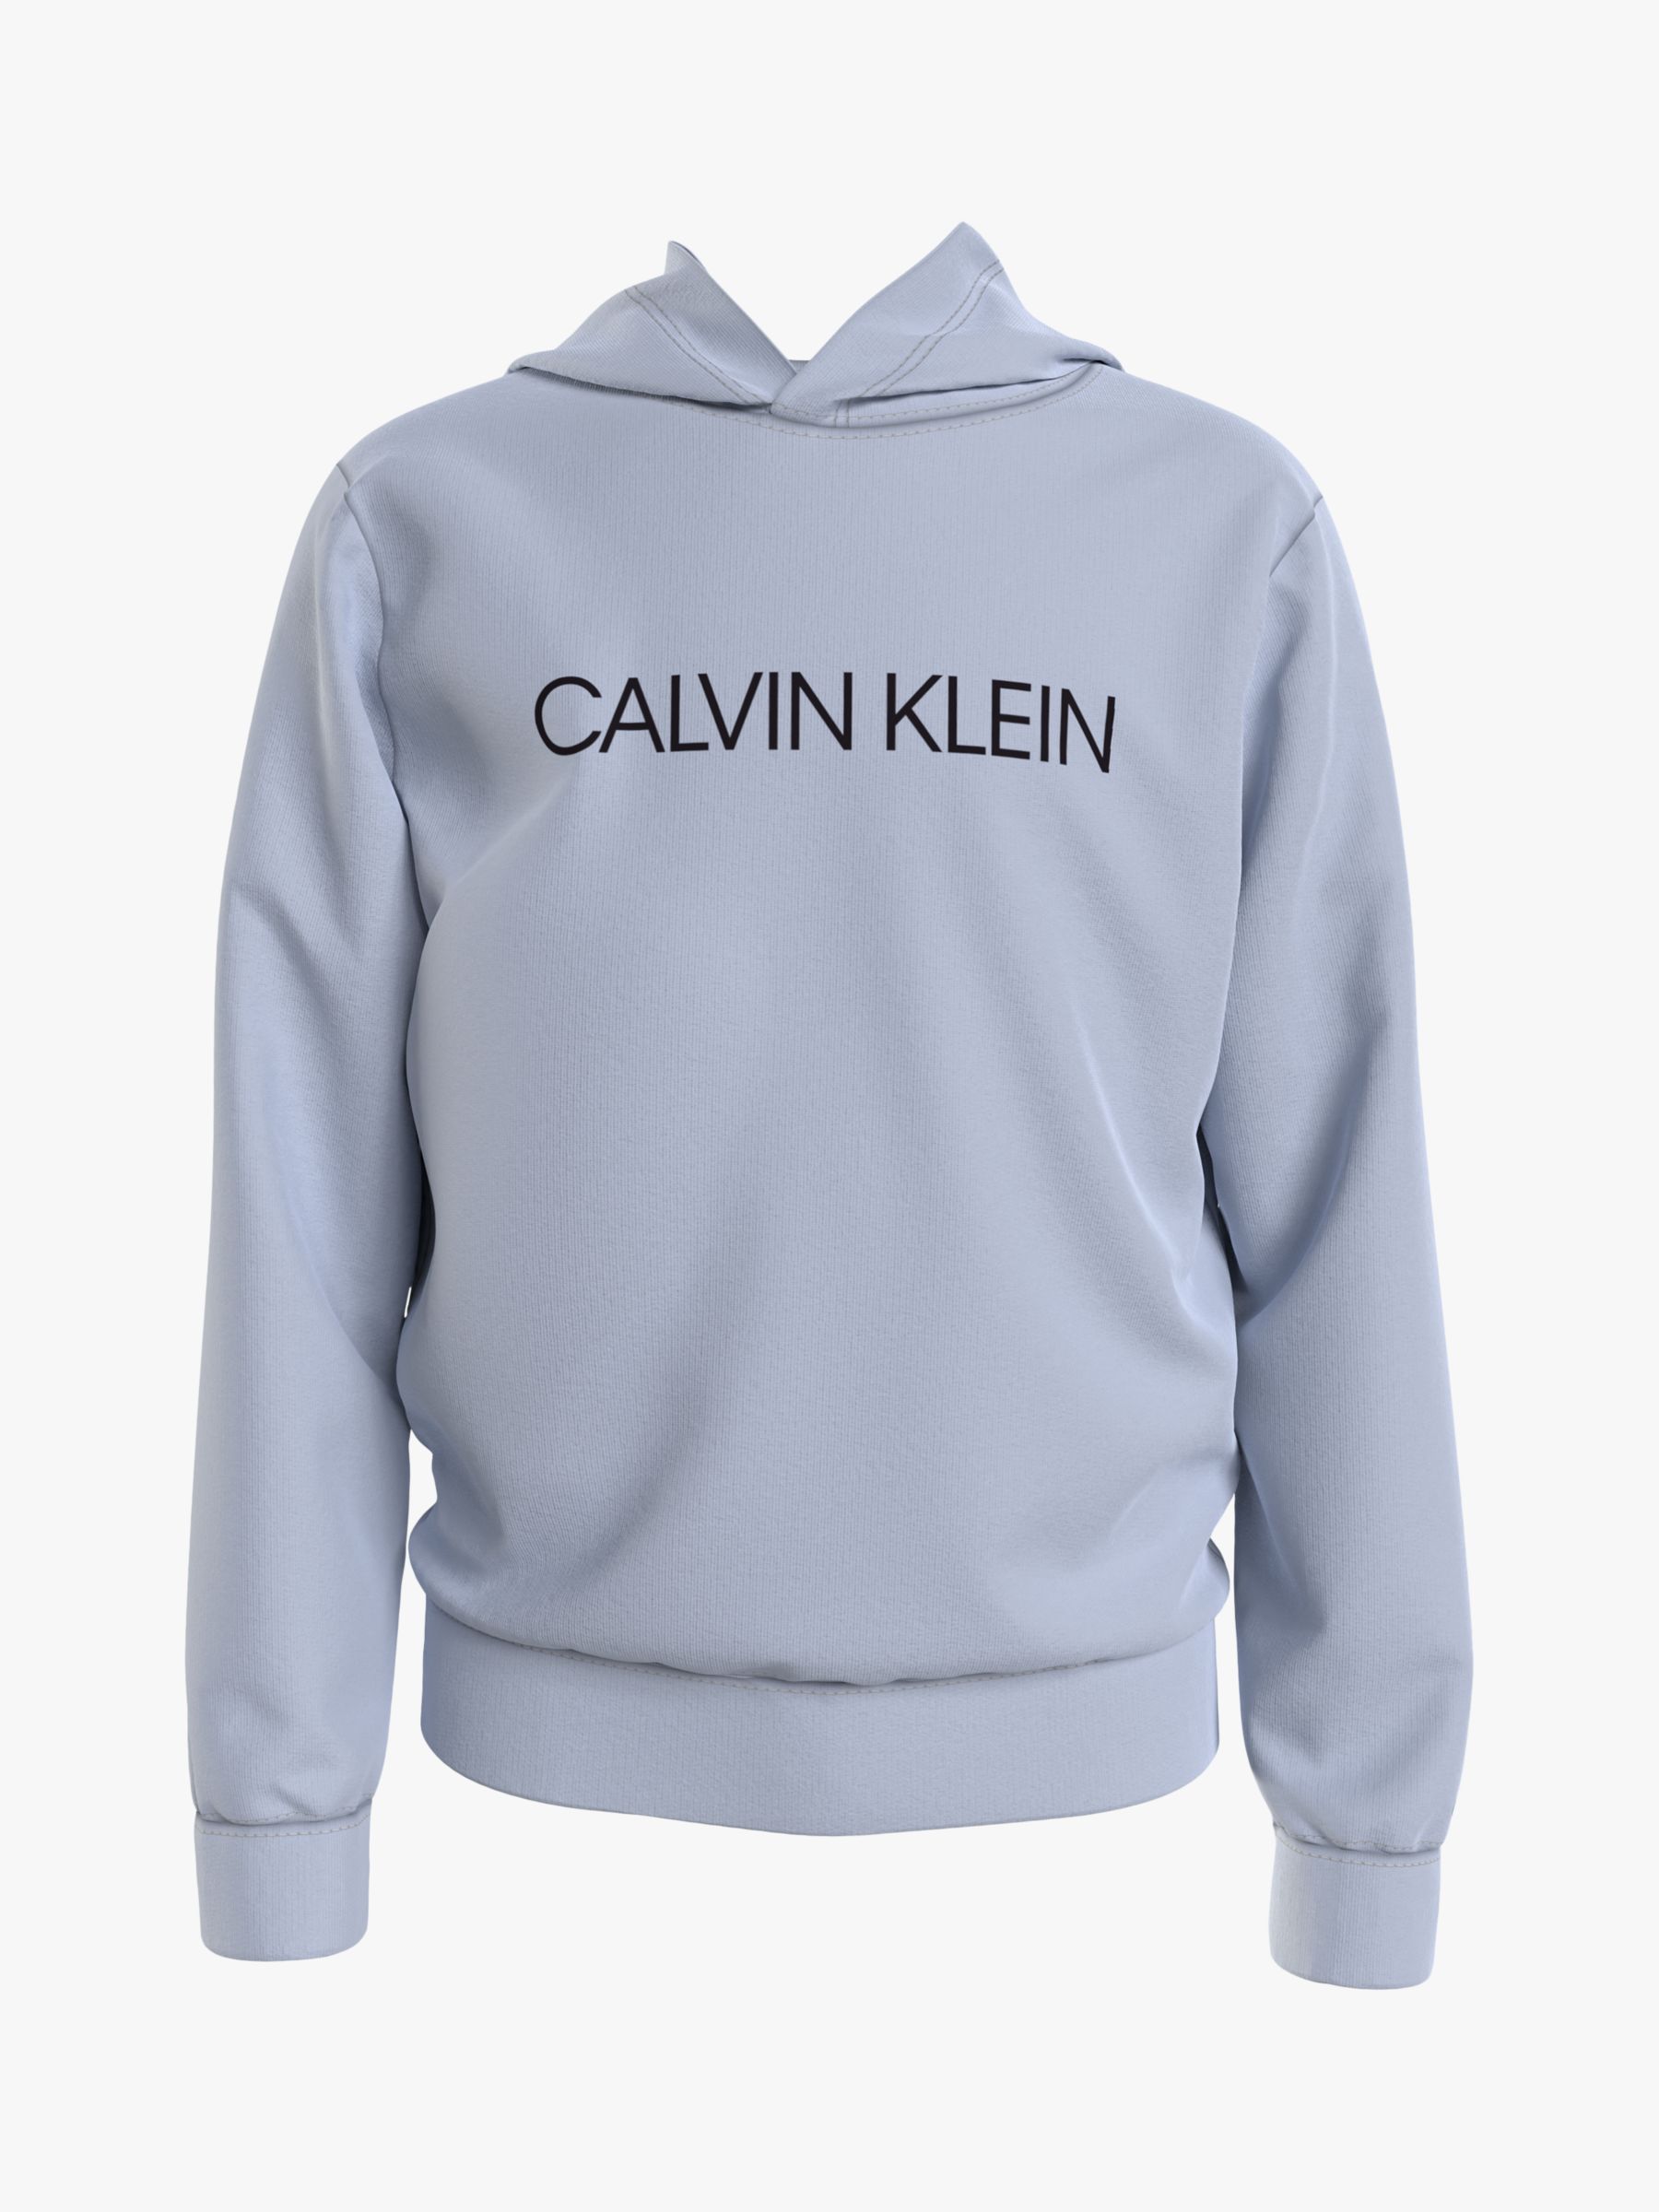 CALVIN KLEIN Sweatshirt INSTITUTIONAL White